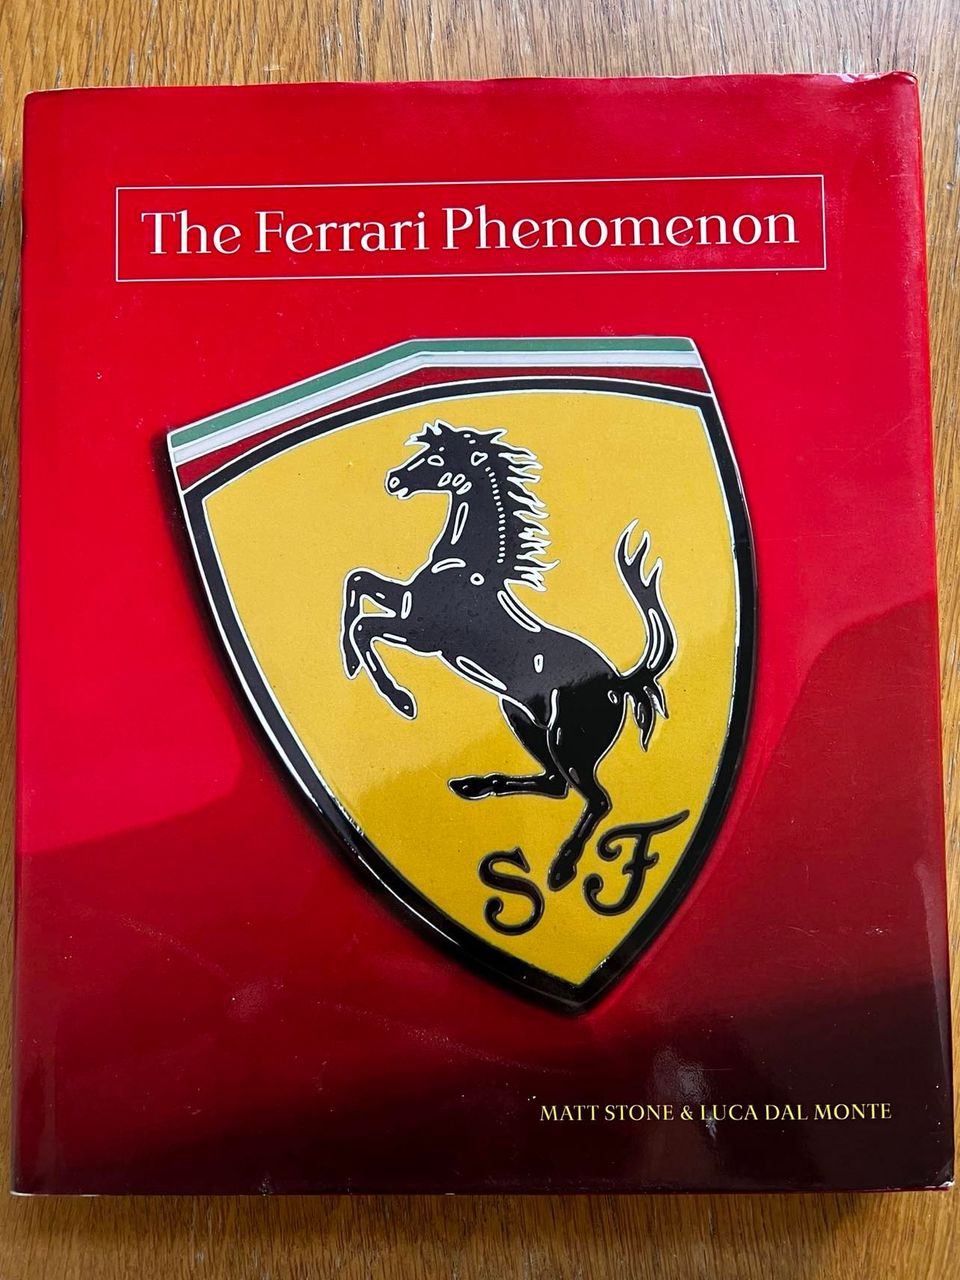 The Ferrari Phenomenon - kirja siitä, mikä Ferrareissa kiehtoo ihmisiä